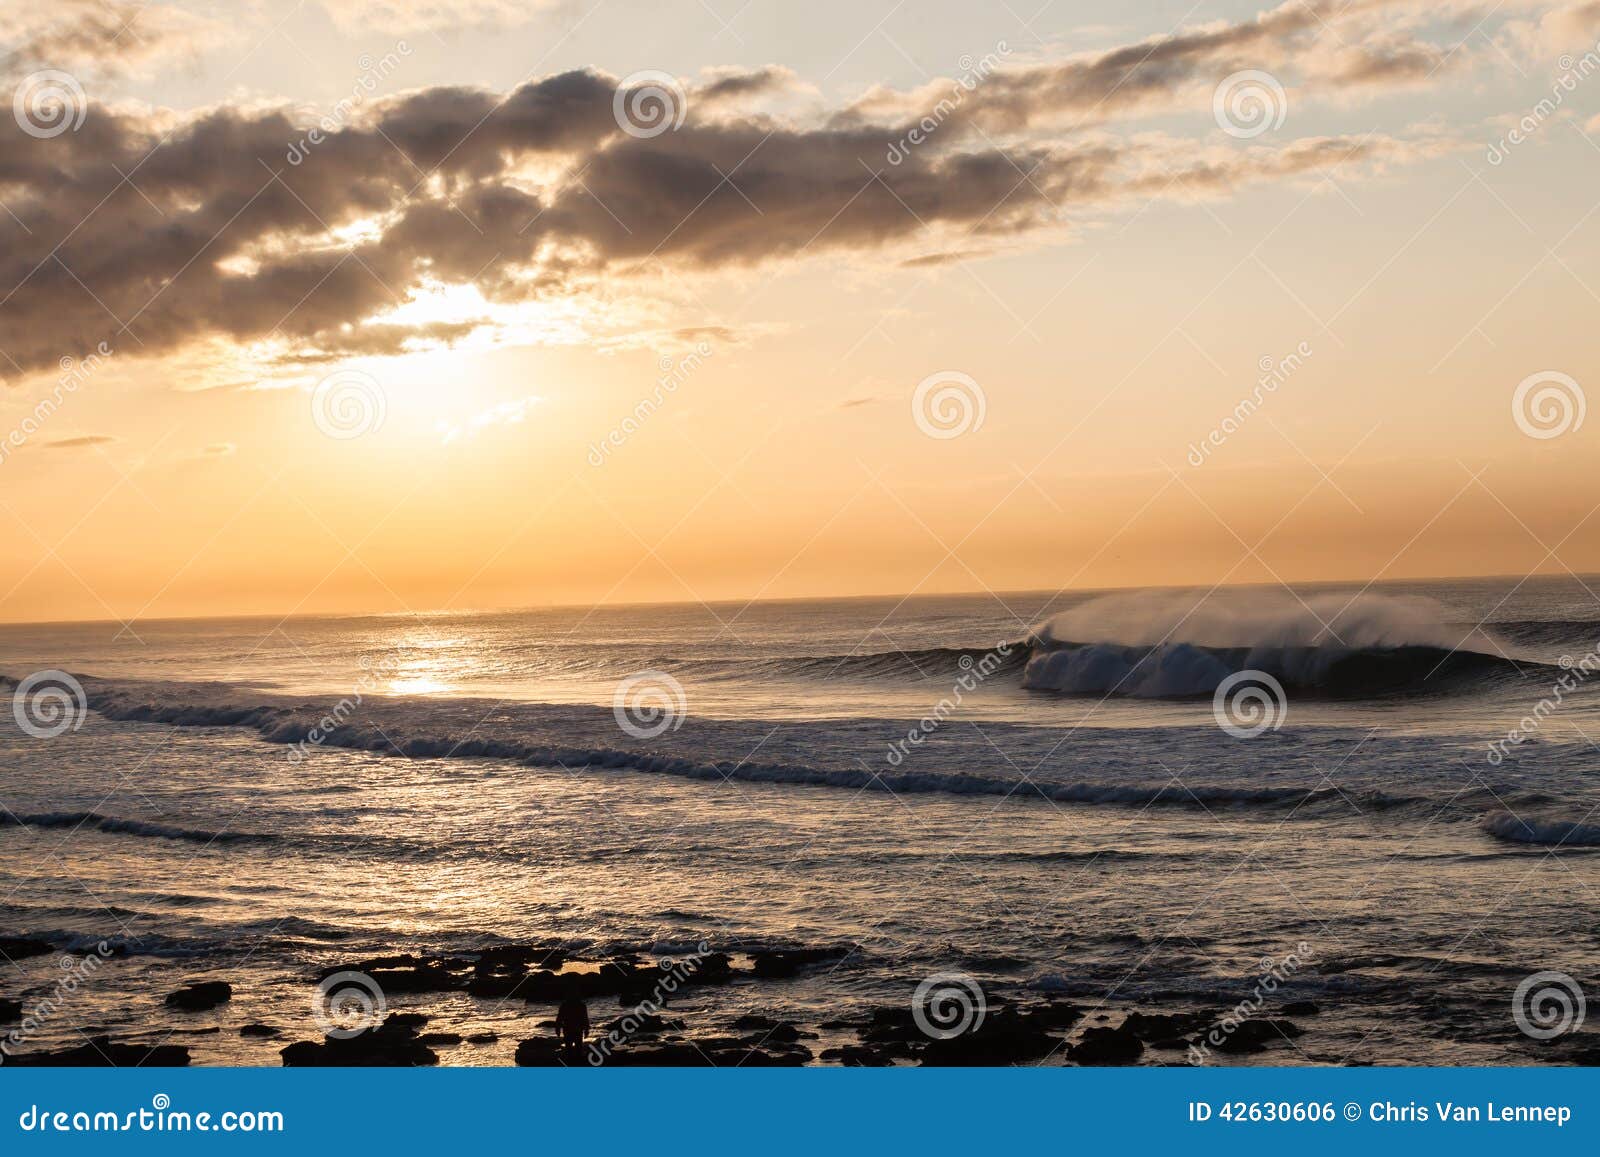 landscape ocean waves sunrise contrasts